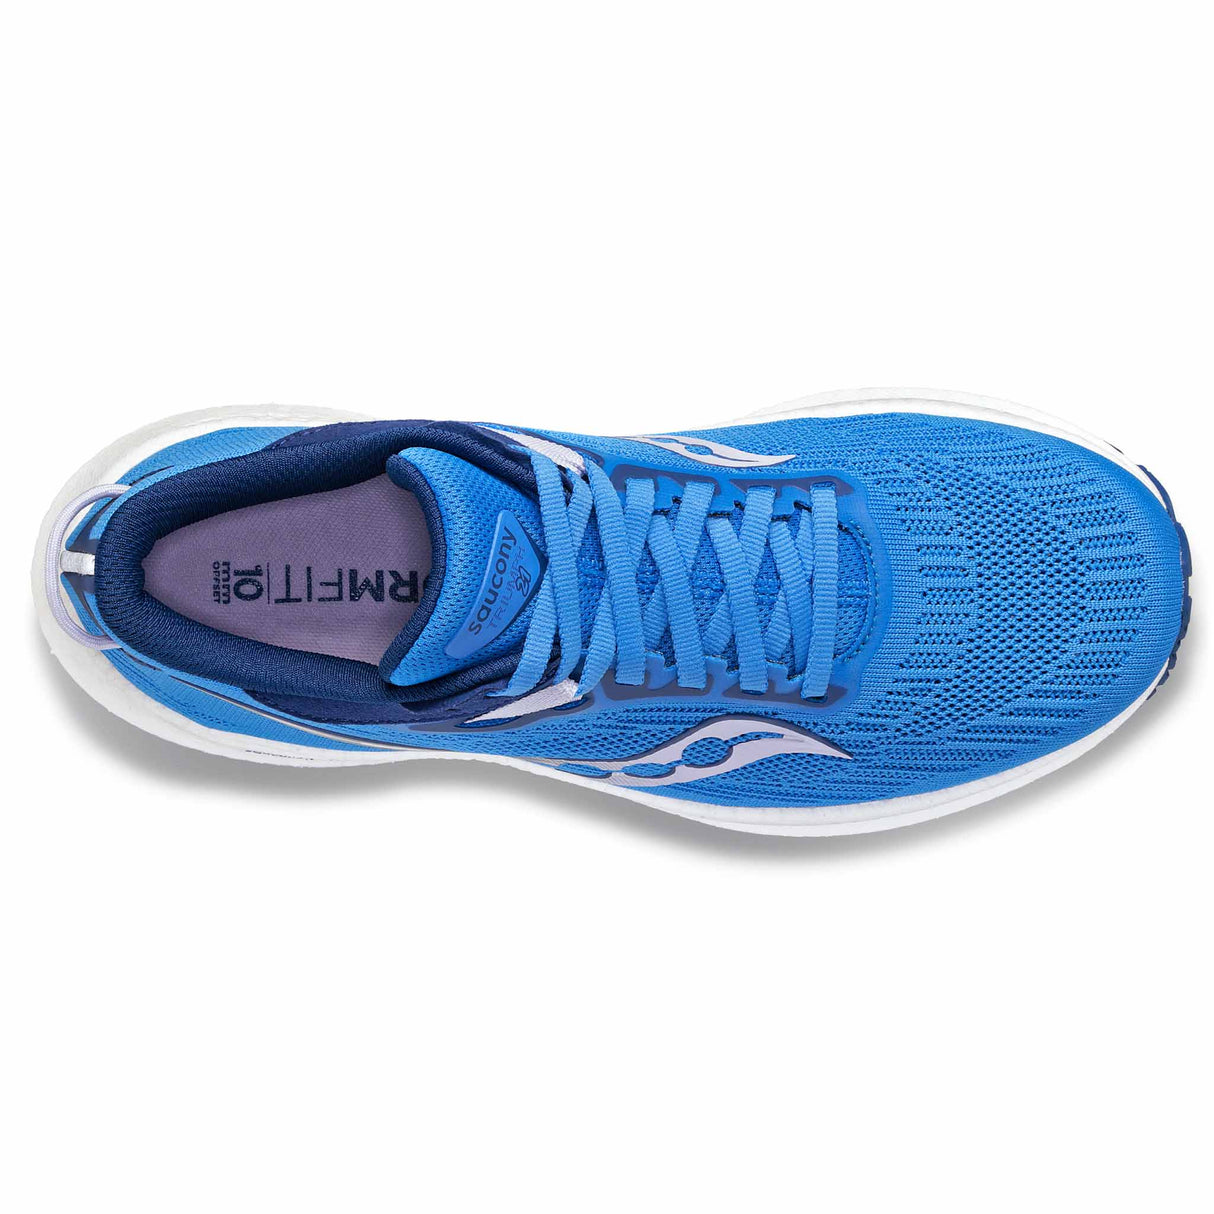 Saucony Triumph 21 chaussures de course à pied femme - Bluelight/Mauve